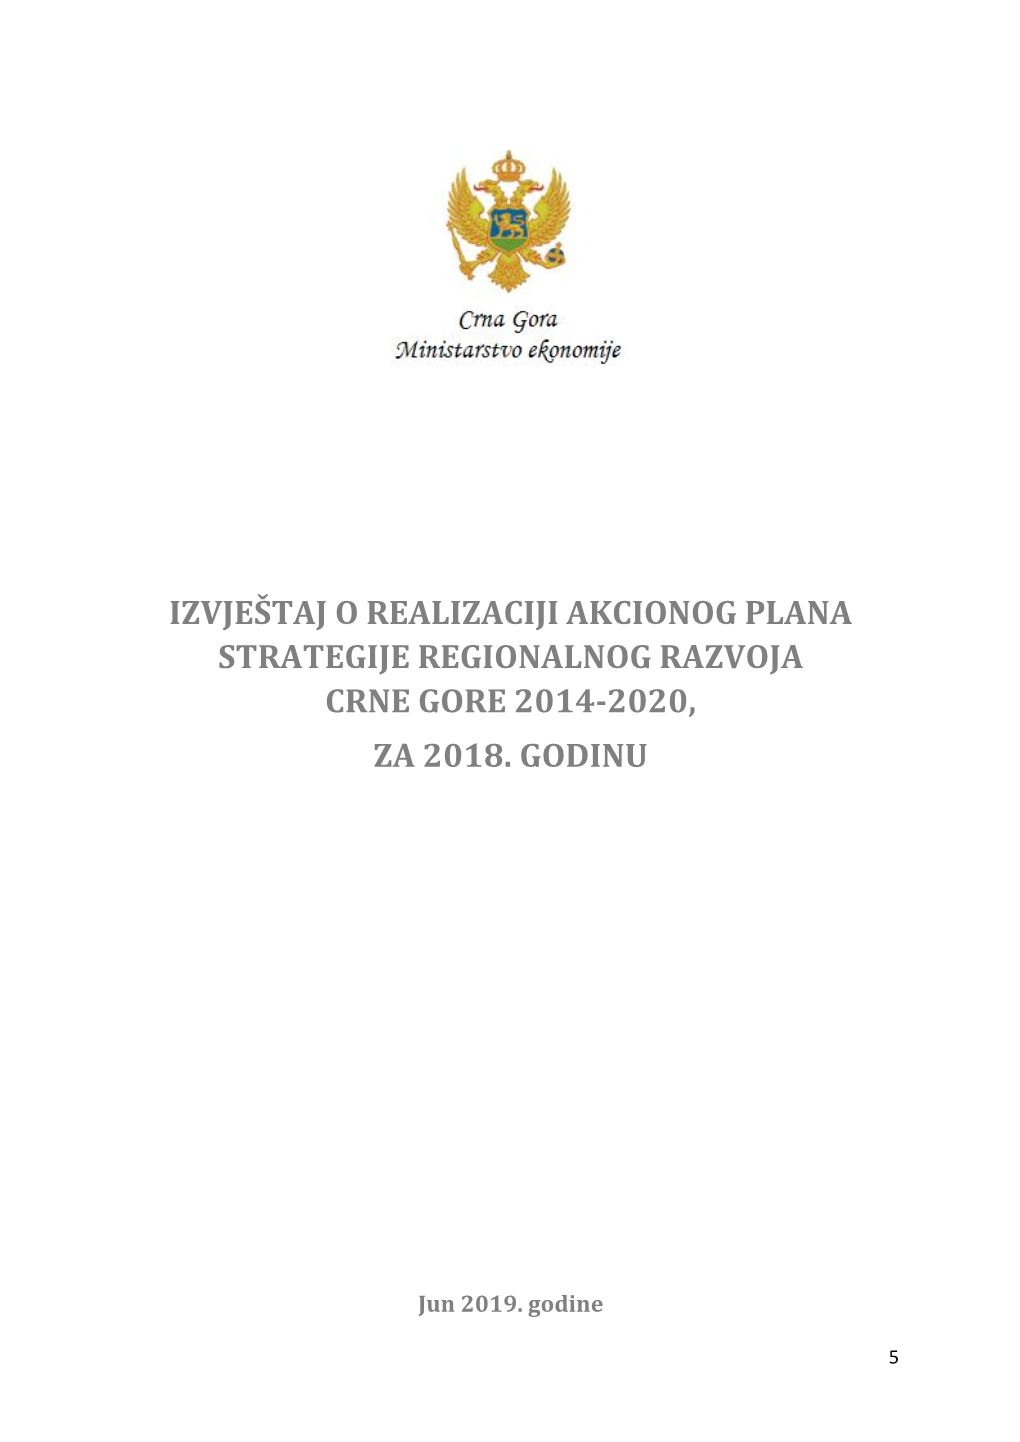 Izvještaj O Realizaciji Akcionog Plana Strategije Regionalnog Razvoja Crne Gore 2014-2020, Za 2018